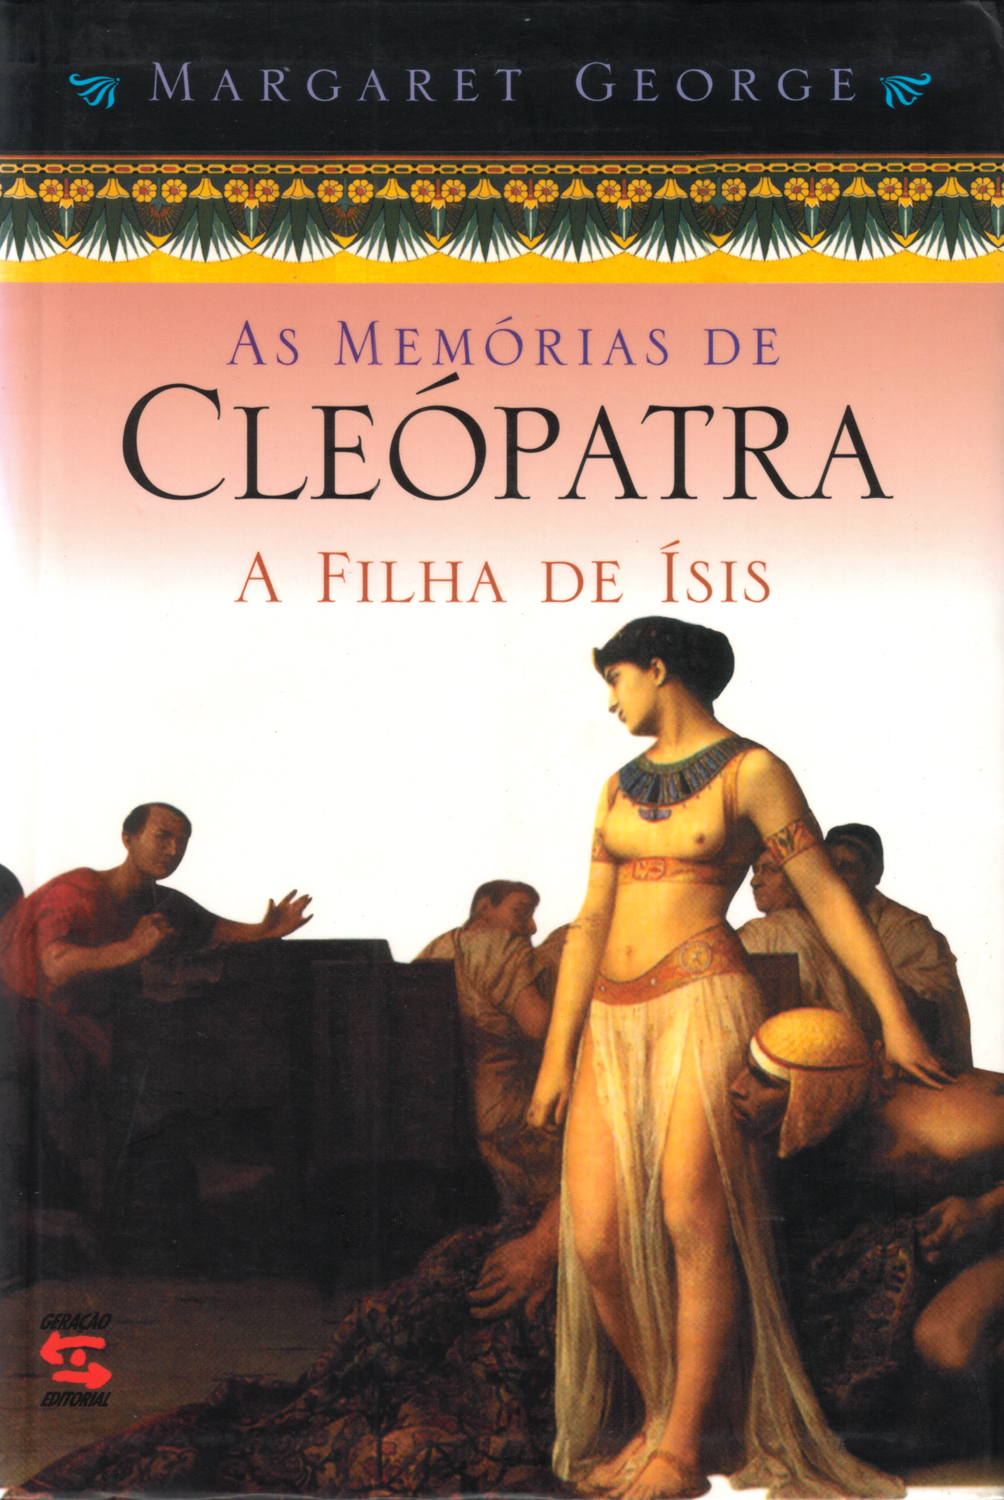 MEMÓRIAS DE CLEÓPATRA, AS - A FILHA DE ÍSIS, livro de MARGARET GEORGE